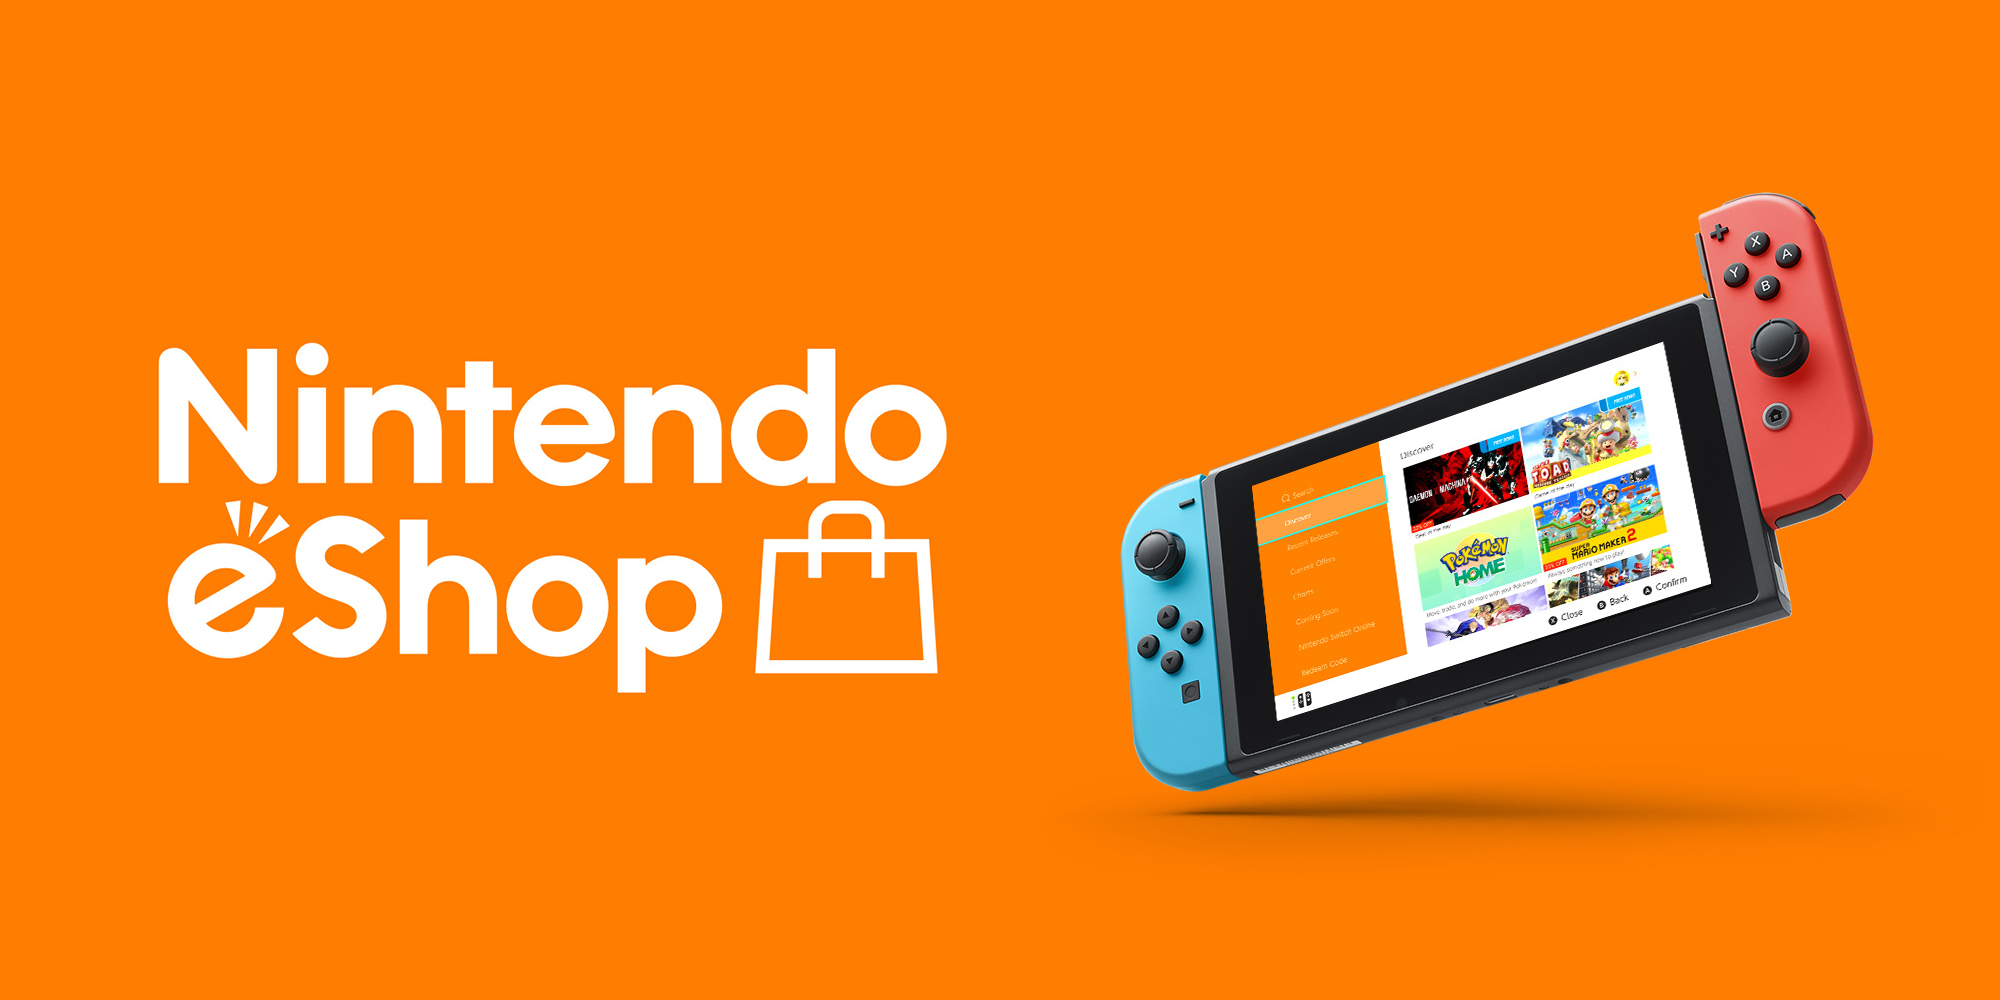 Nintendo eShop Prepaid Card $45 US Key, $50.85